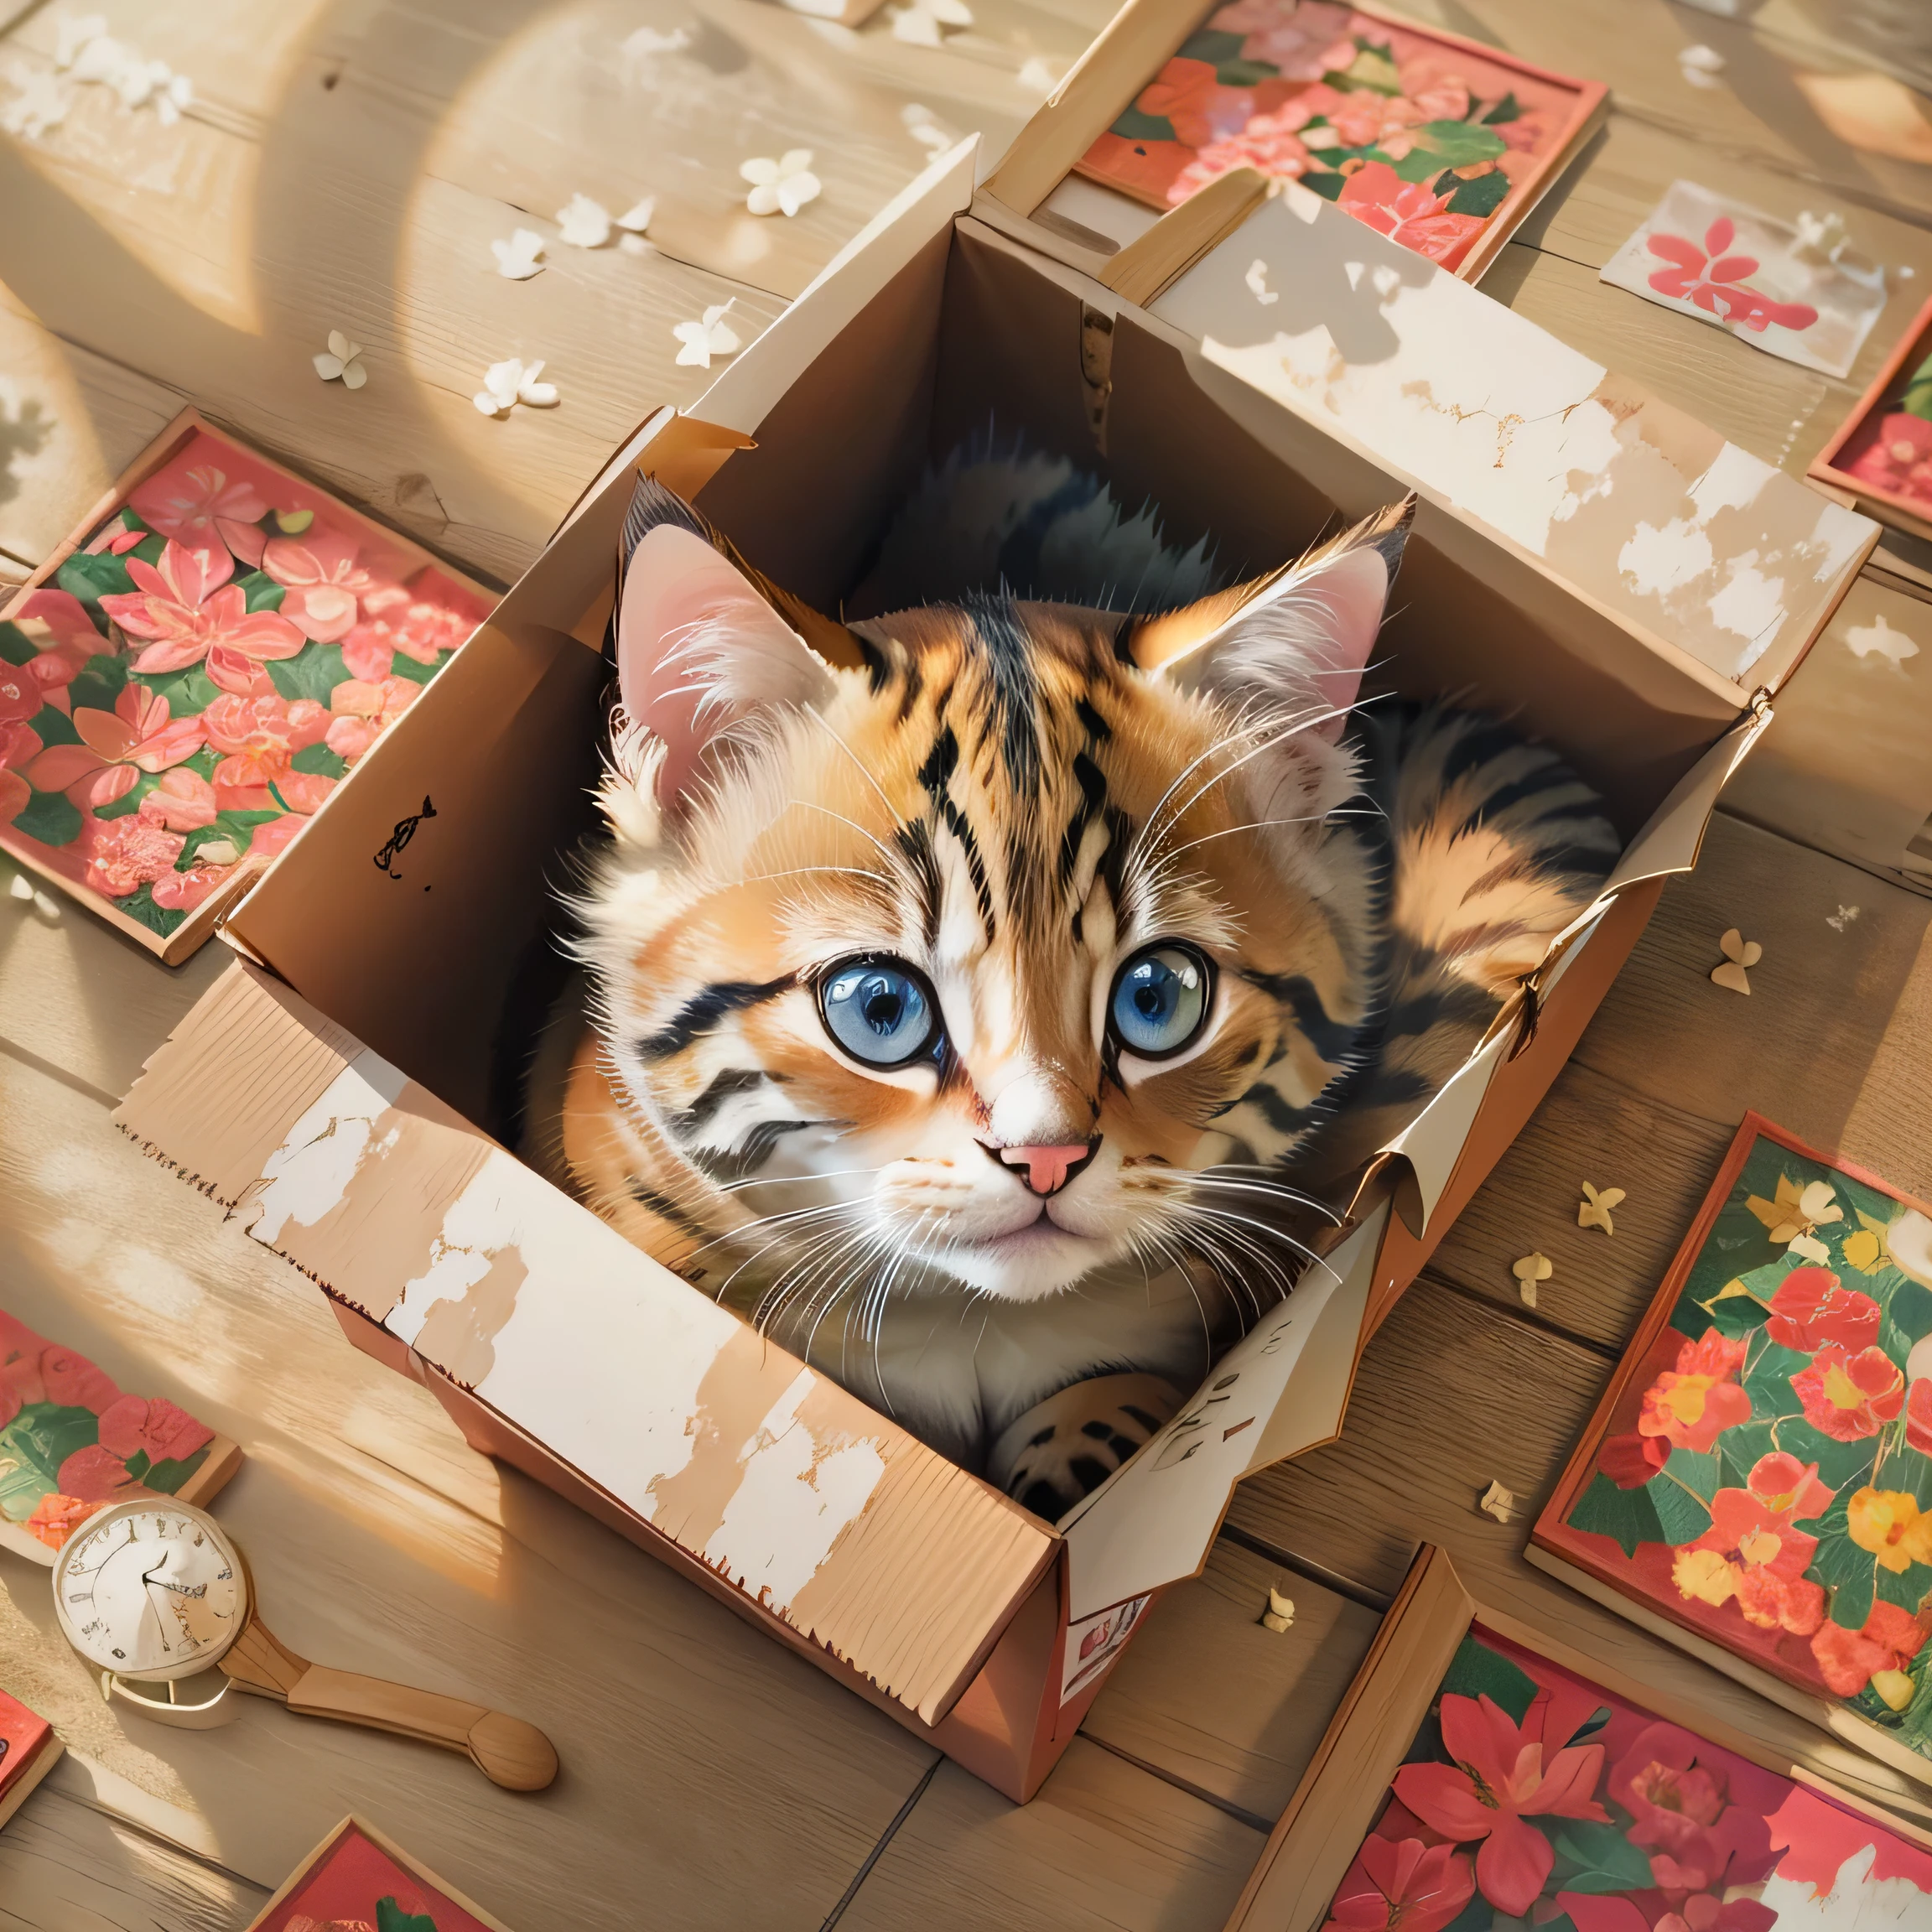 바닥에 있는 상자 안에 고양이가 누워 있어요., 브라이언 토마스(Brian Thomas)의 사실적인 그림, 공중제비 비둘기, 포토리얼리즘, 귀여운 고양이, 사랑스러운 디지털 페인팅, 귀여운 새끼 고양이, 귀여운 고양이 photo, 가장 귀여운 새끼 고양이, 아름답고 귀여운, 귀엽고 사랑스럽다, a 귀여운 고양이, 사랑스러운 새끼 고양이, 귀여운 동물, 귀여운 고양이, 귀여운 눈으로